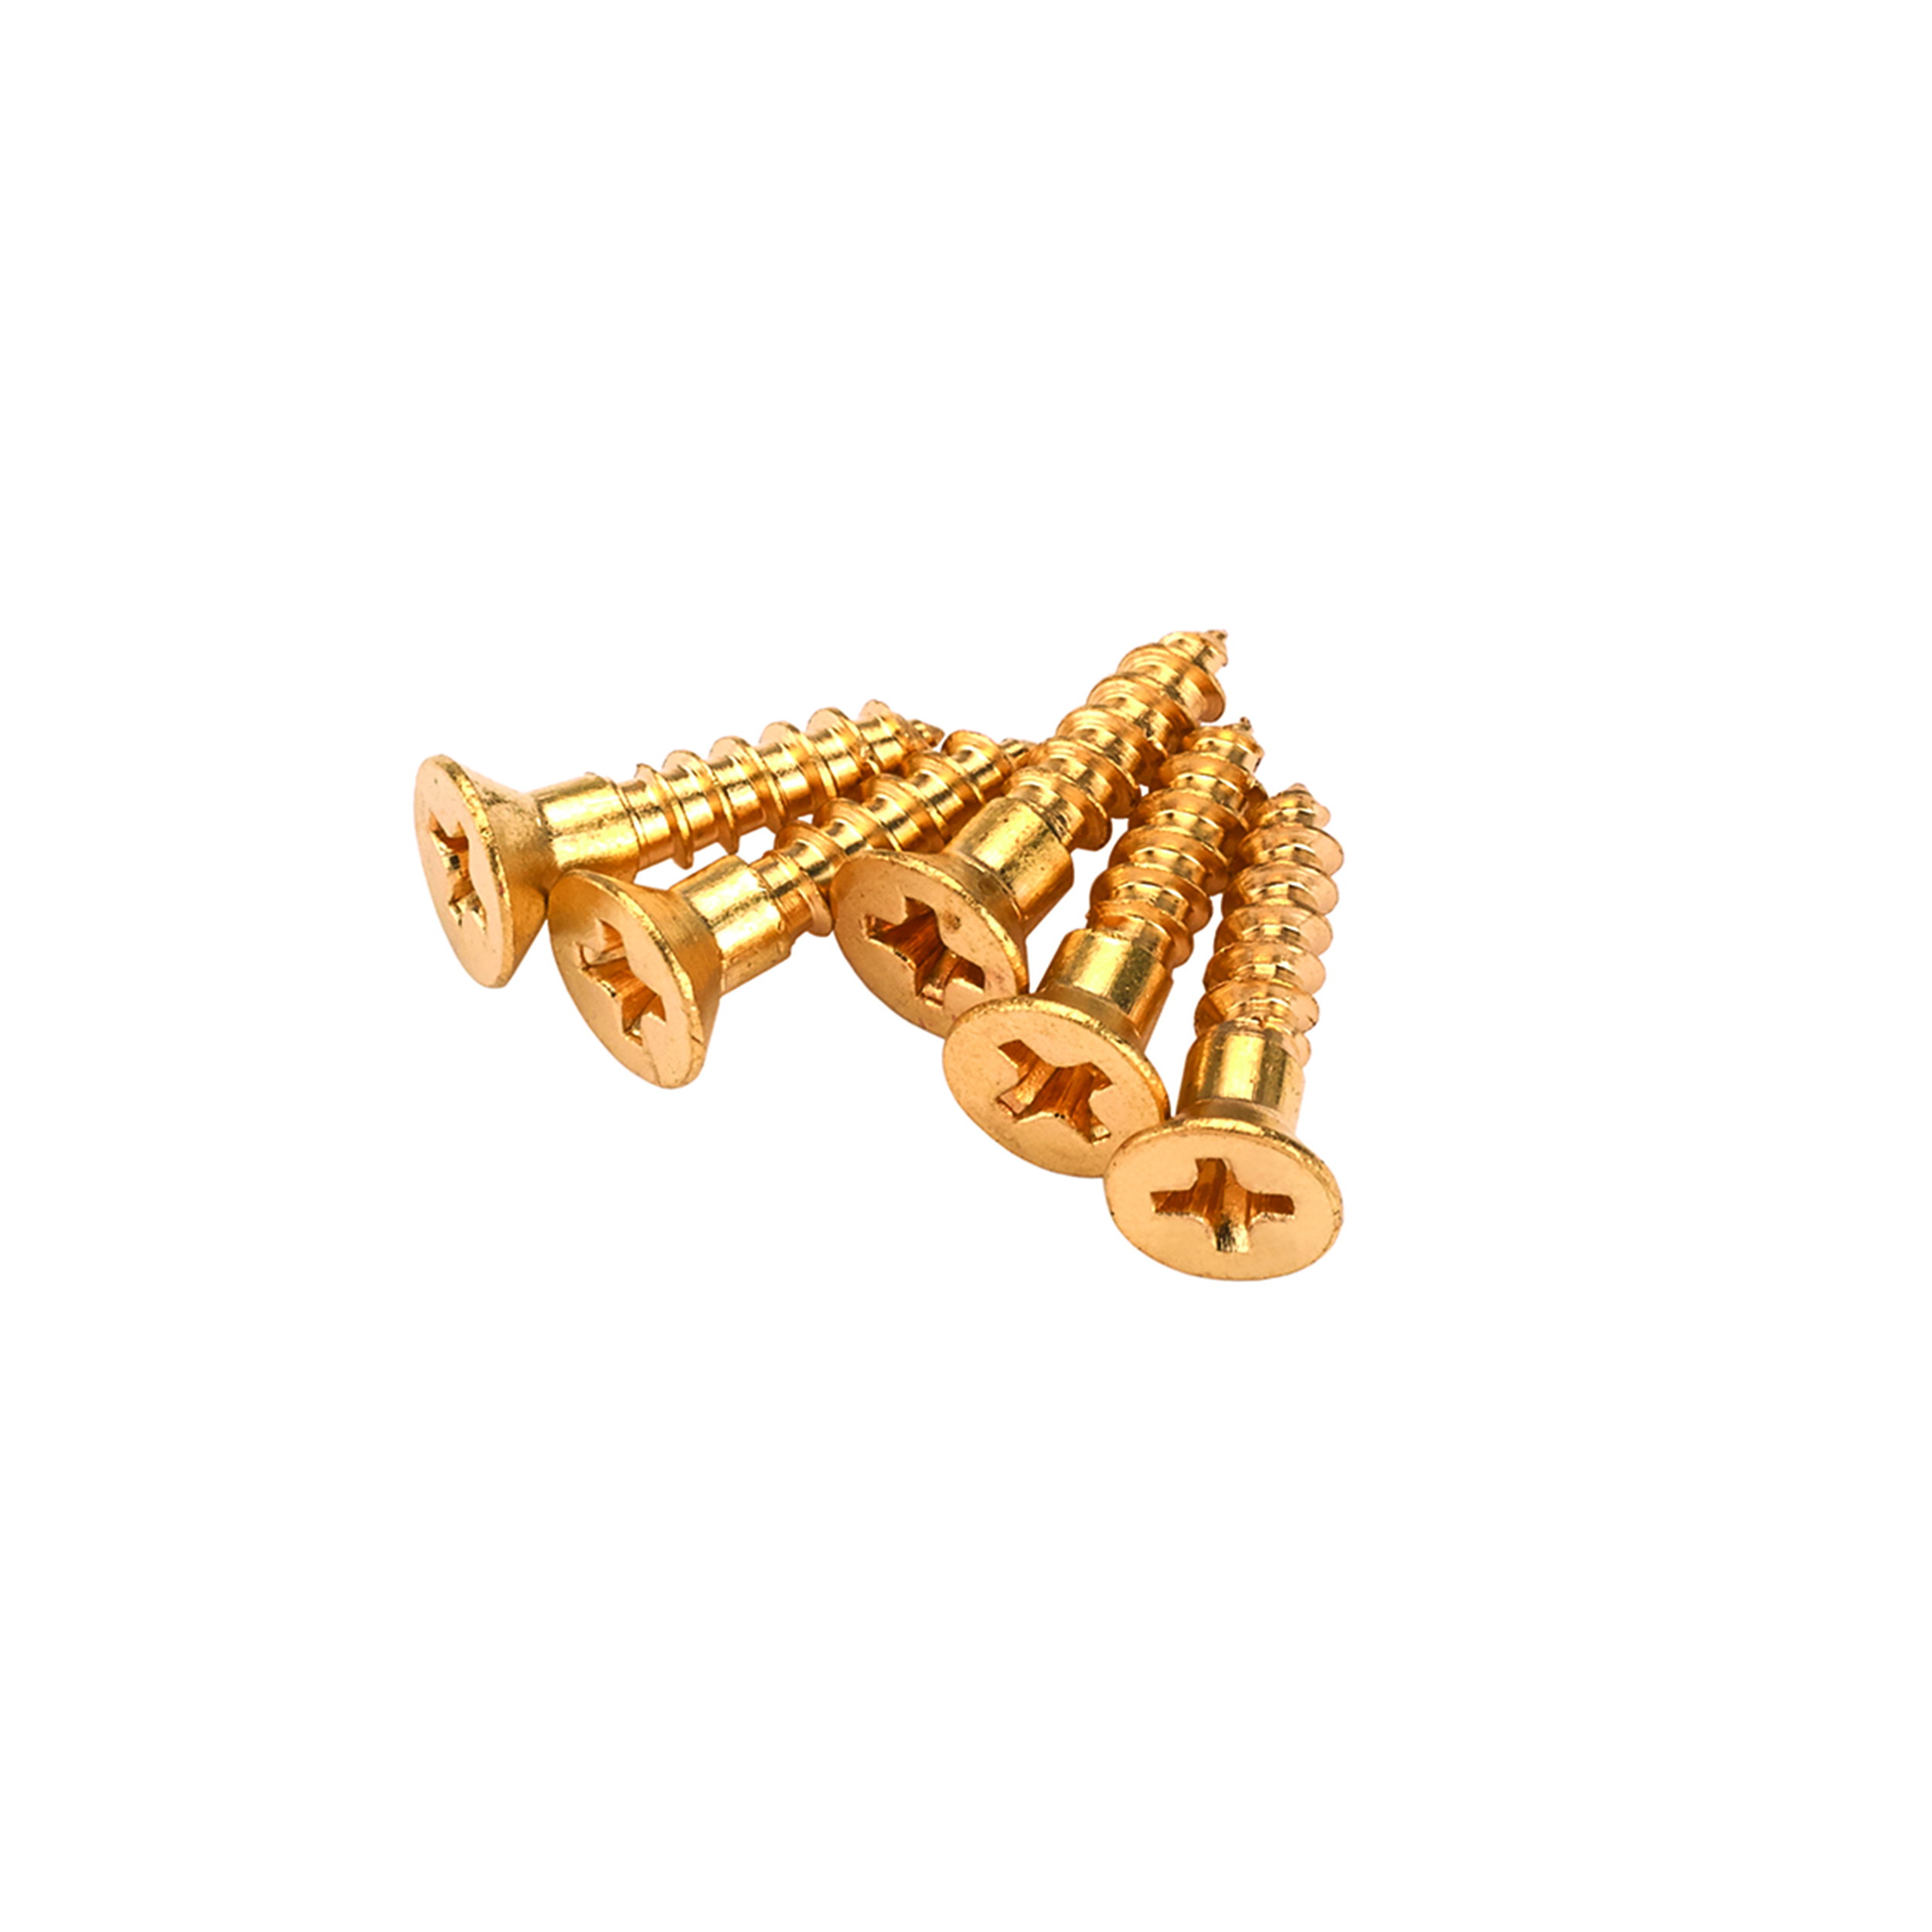 Solid Brass Screws #1 X 1/2" Phillips 25-piece